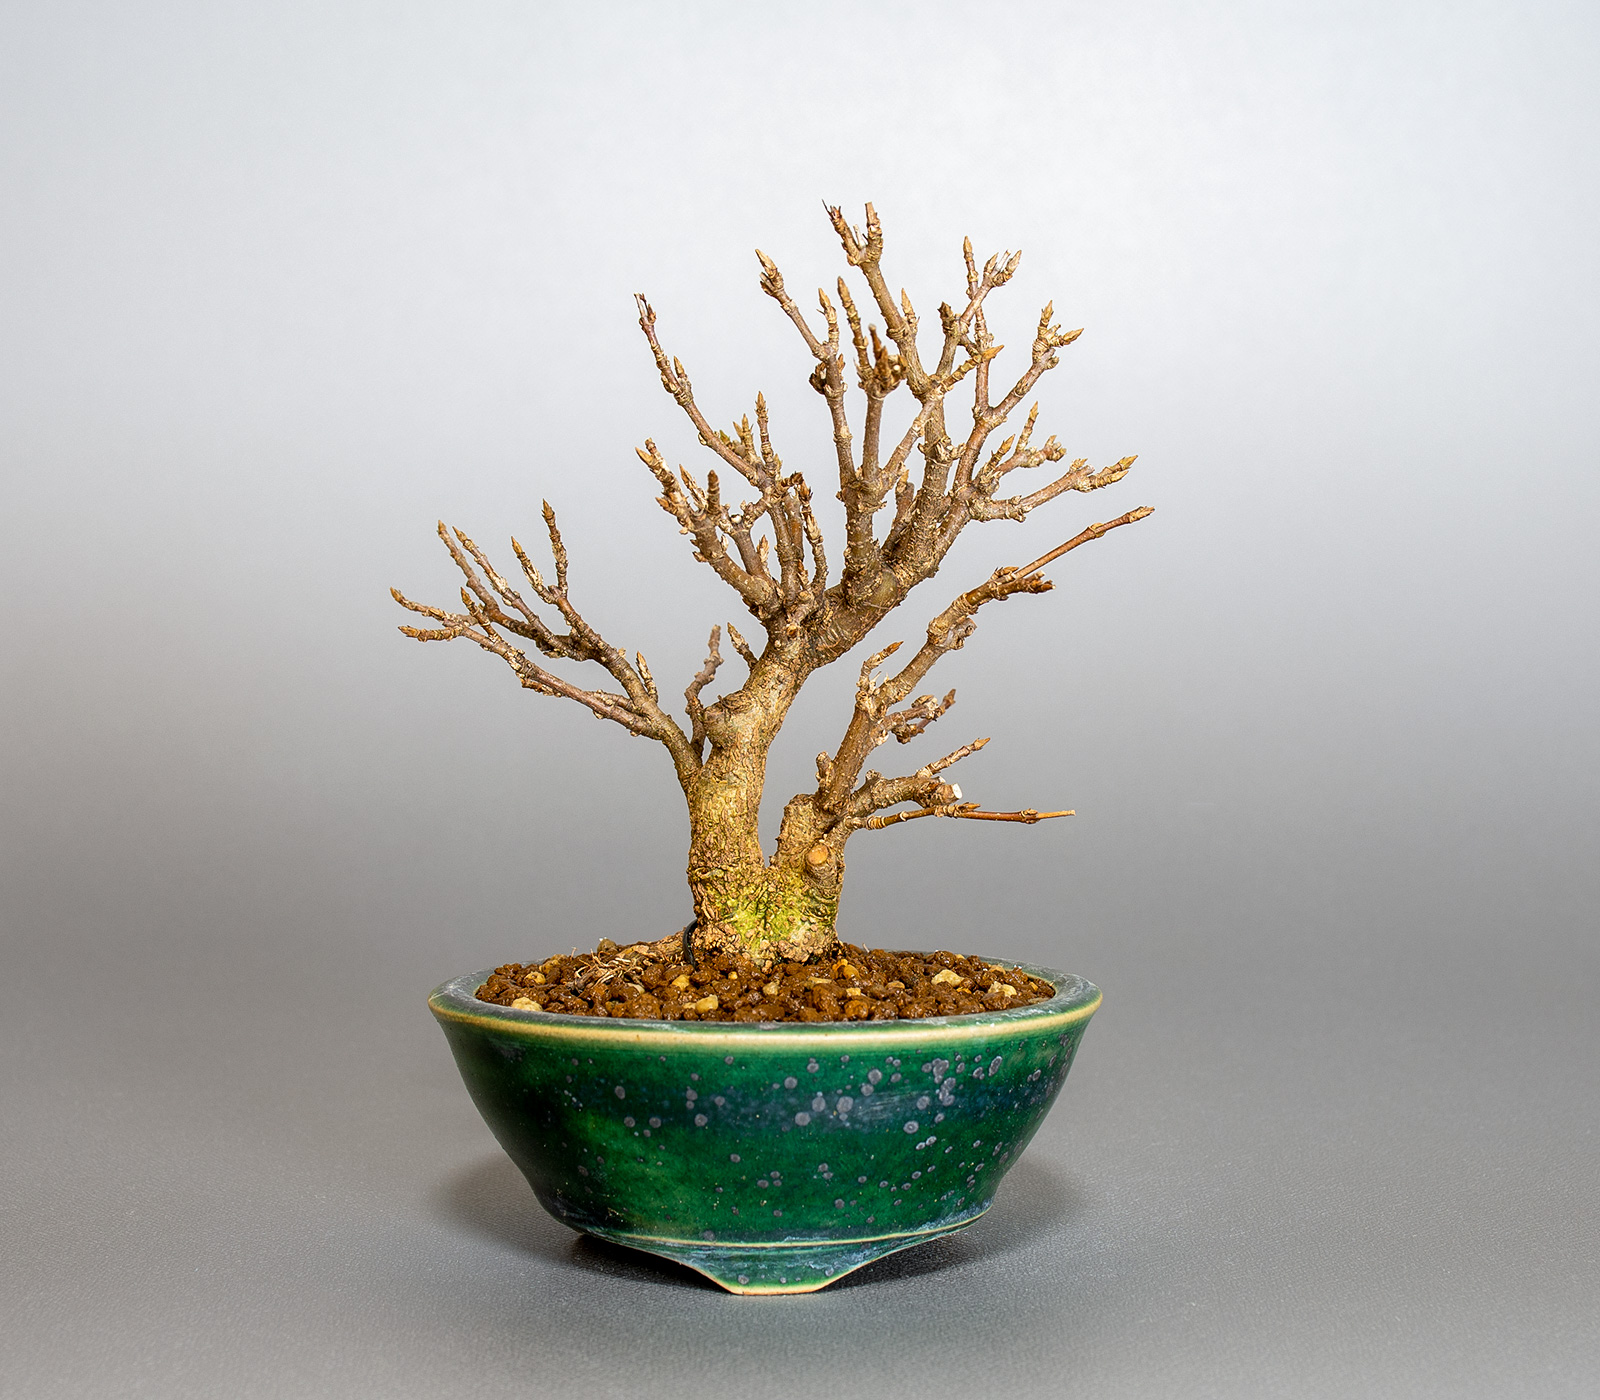 トウカエデ-T2（とうかえで・唐楓）雑木盆栽の販売と育て方・作り方・Acer buergerianum bonsai